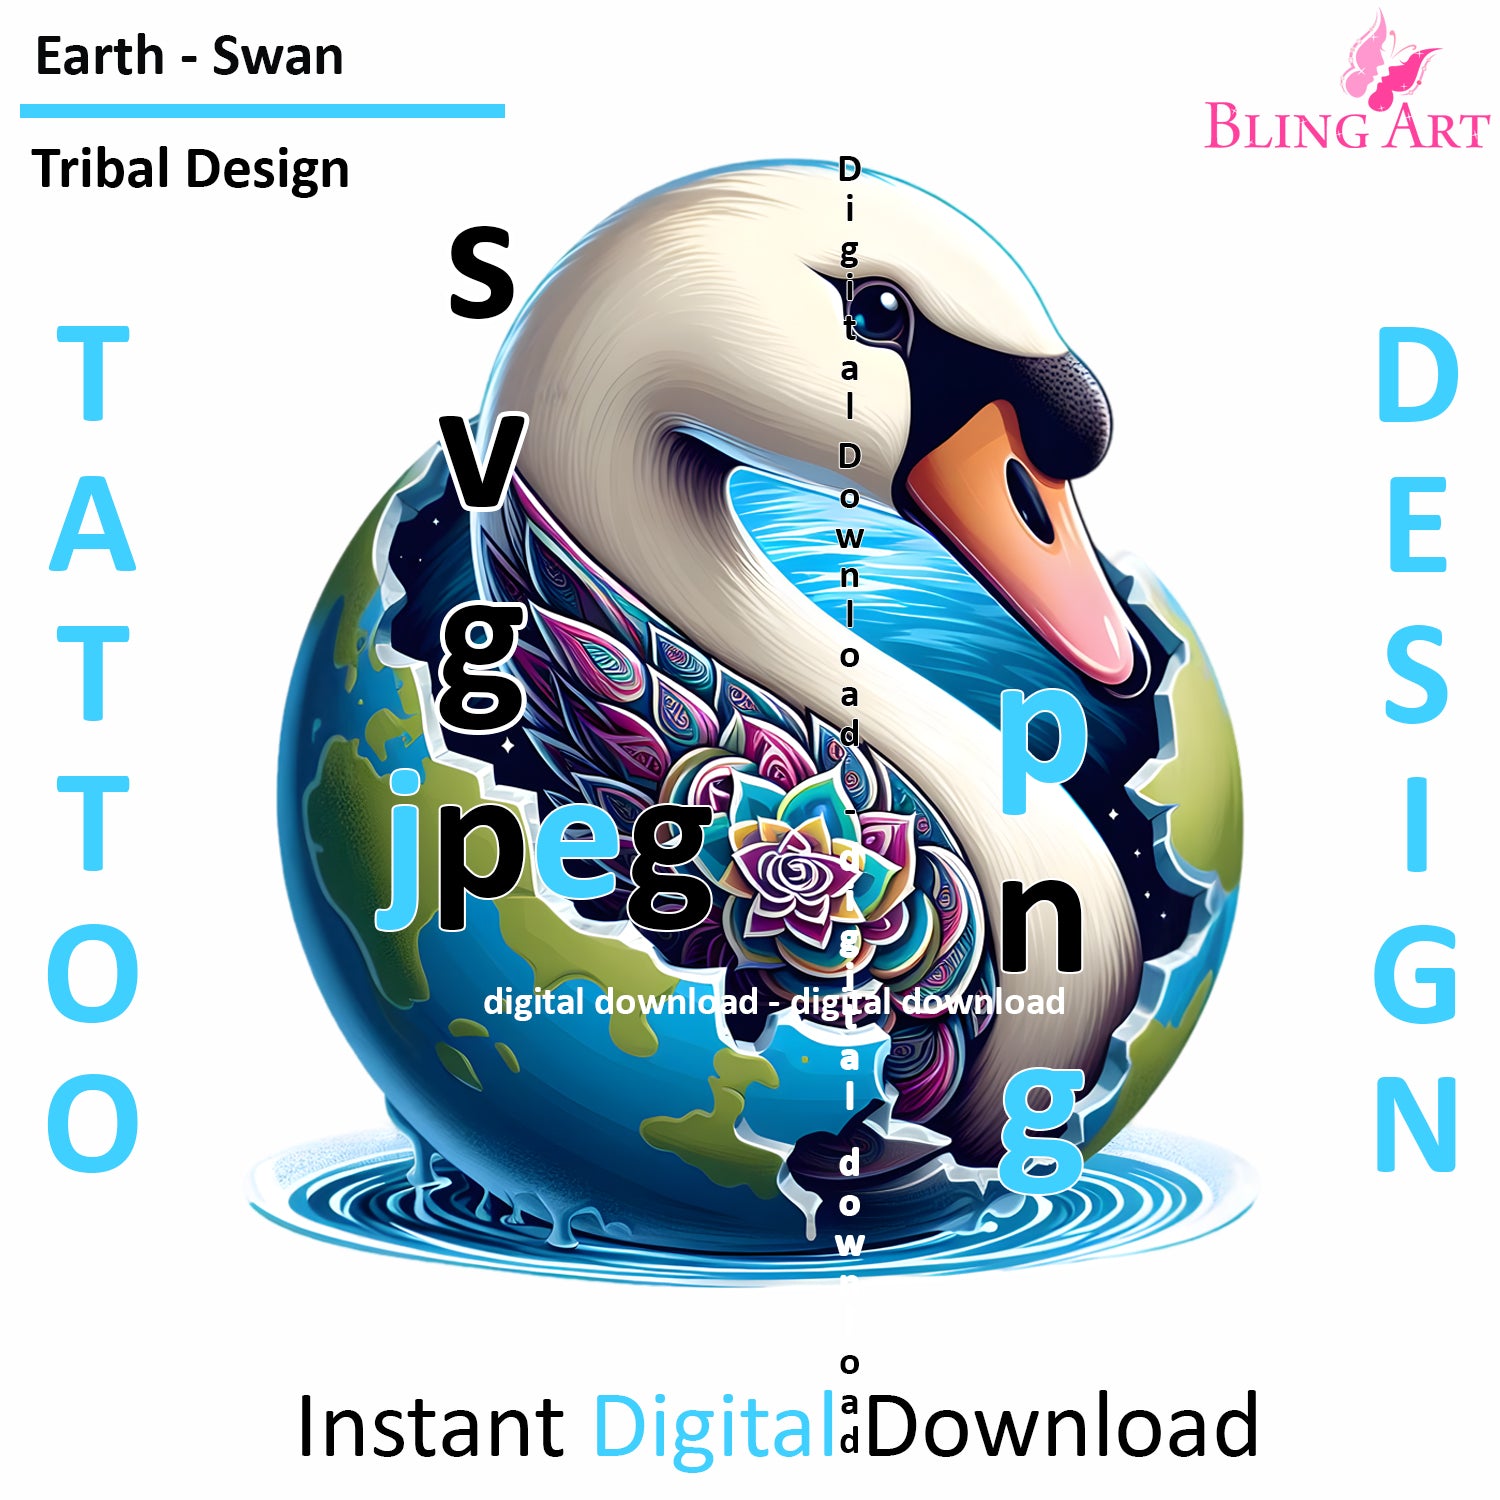 Swan World Tribal Tattoo Art - Digital Design (PNG, JPEG, SVG) - Instant Download for Tattoos, T-Shirts, Wall Art